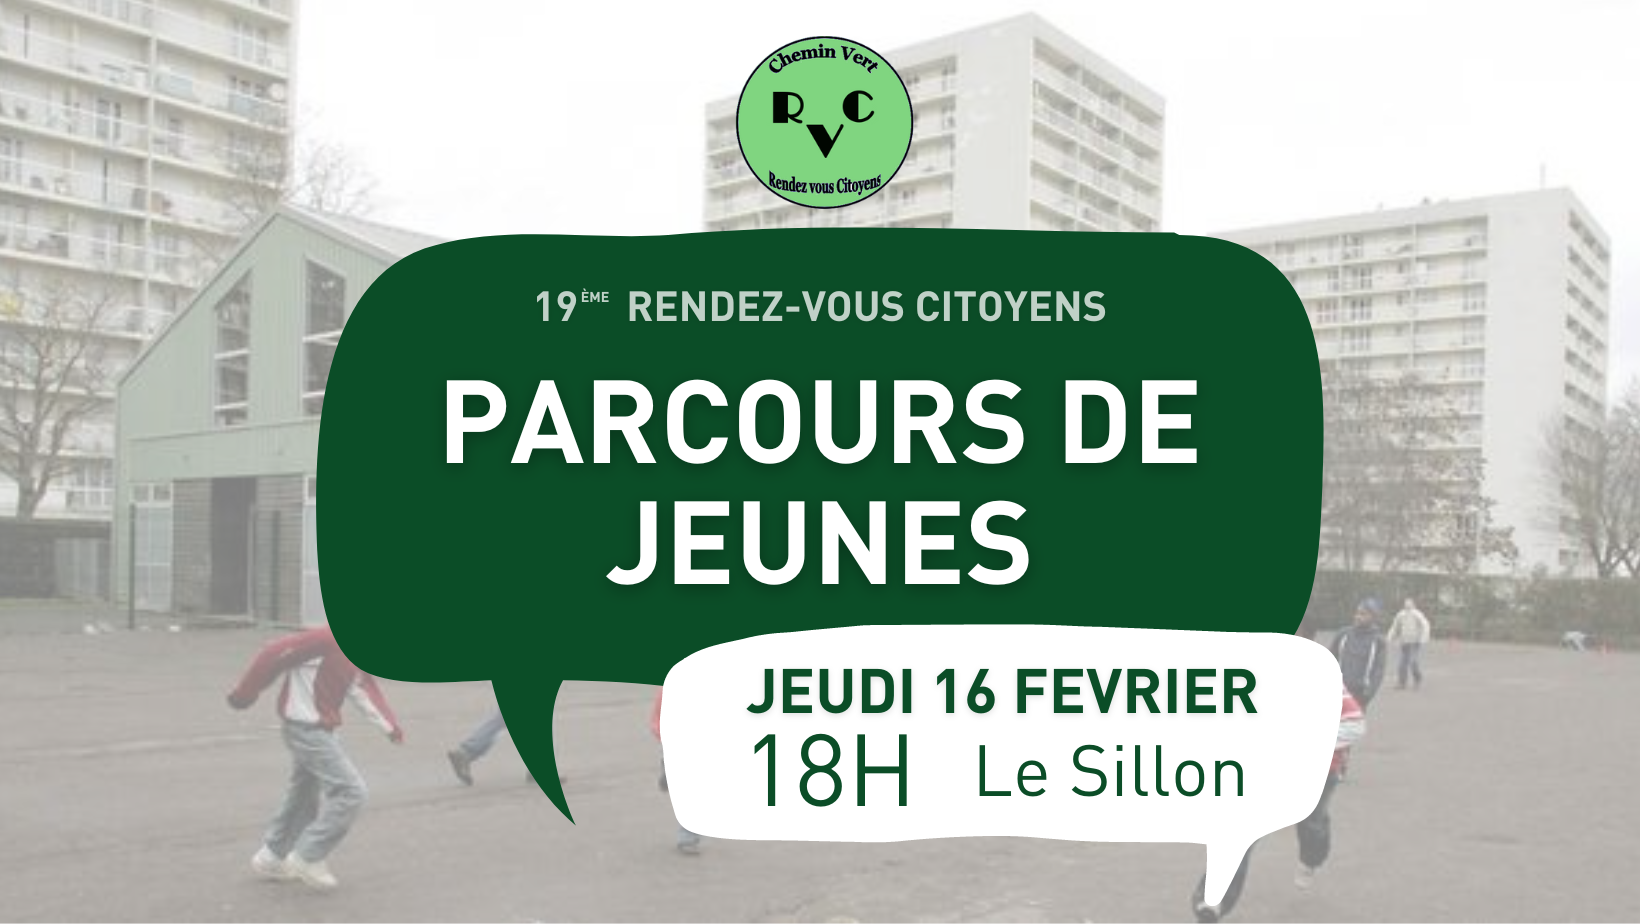 Rendez-vous citoyens #19 au Chemin-vert, parcours de jeunes du chemin vert, 16 février au Sillon.